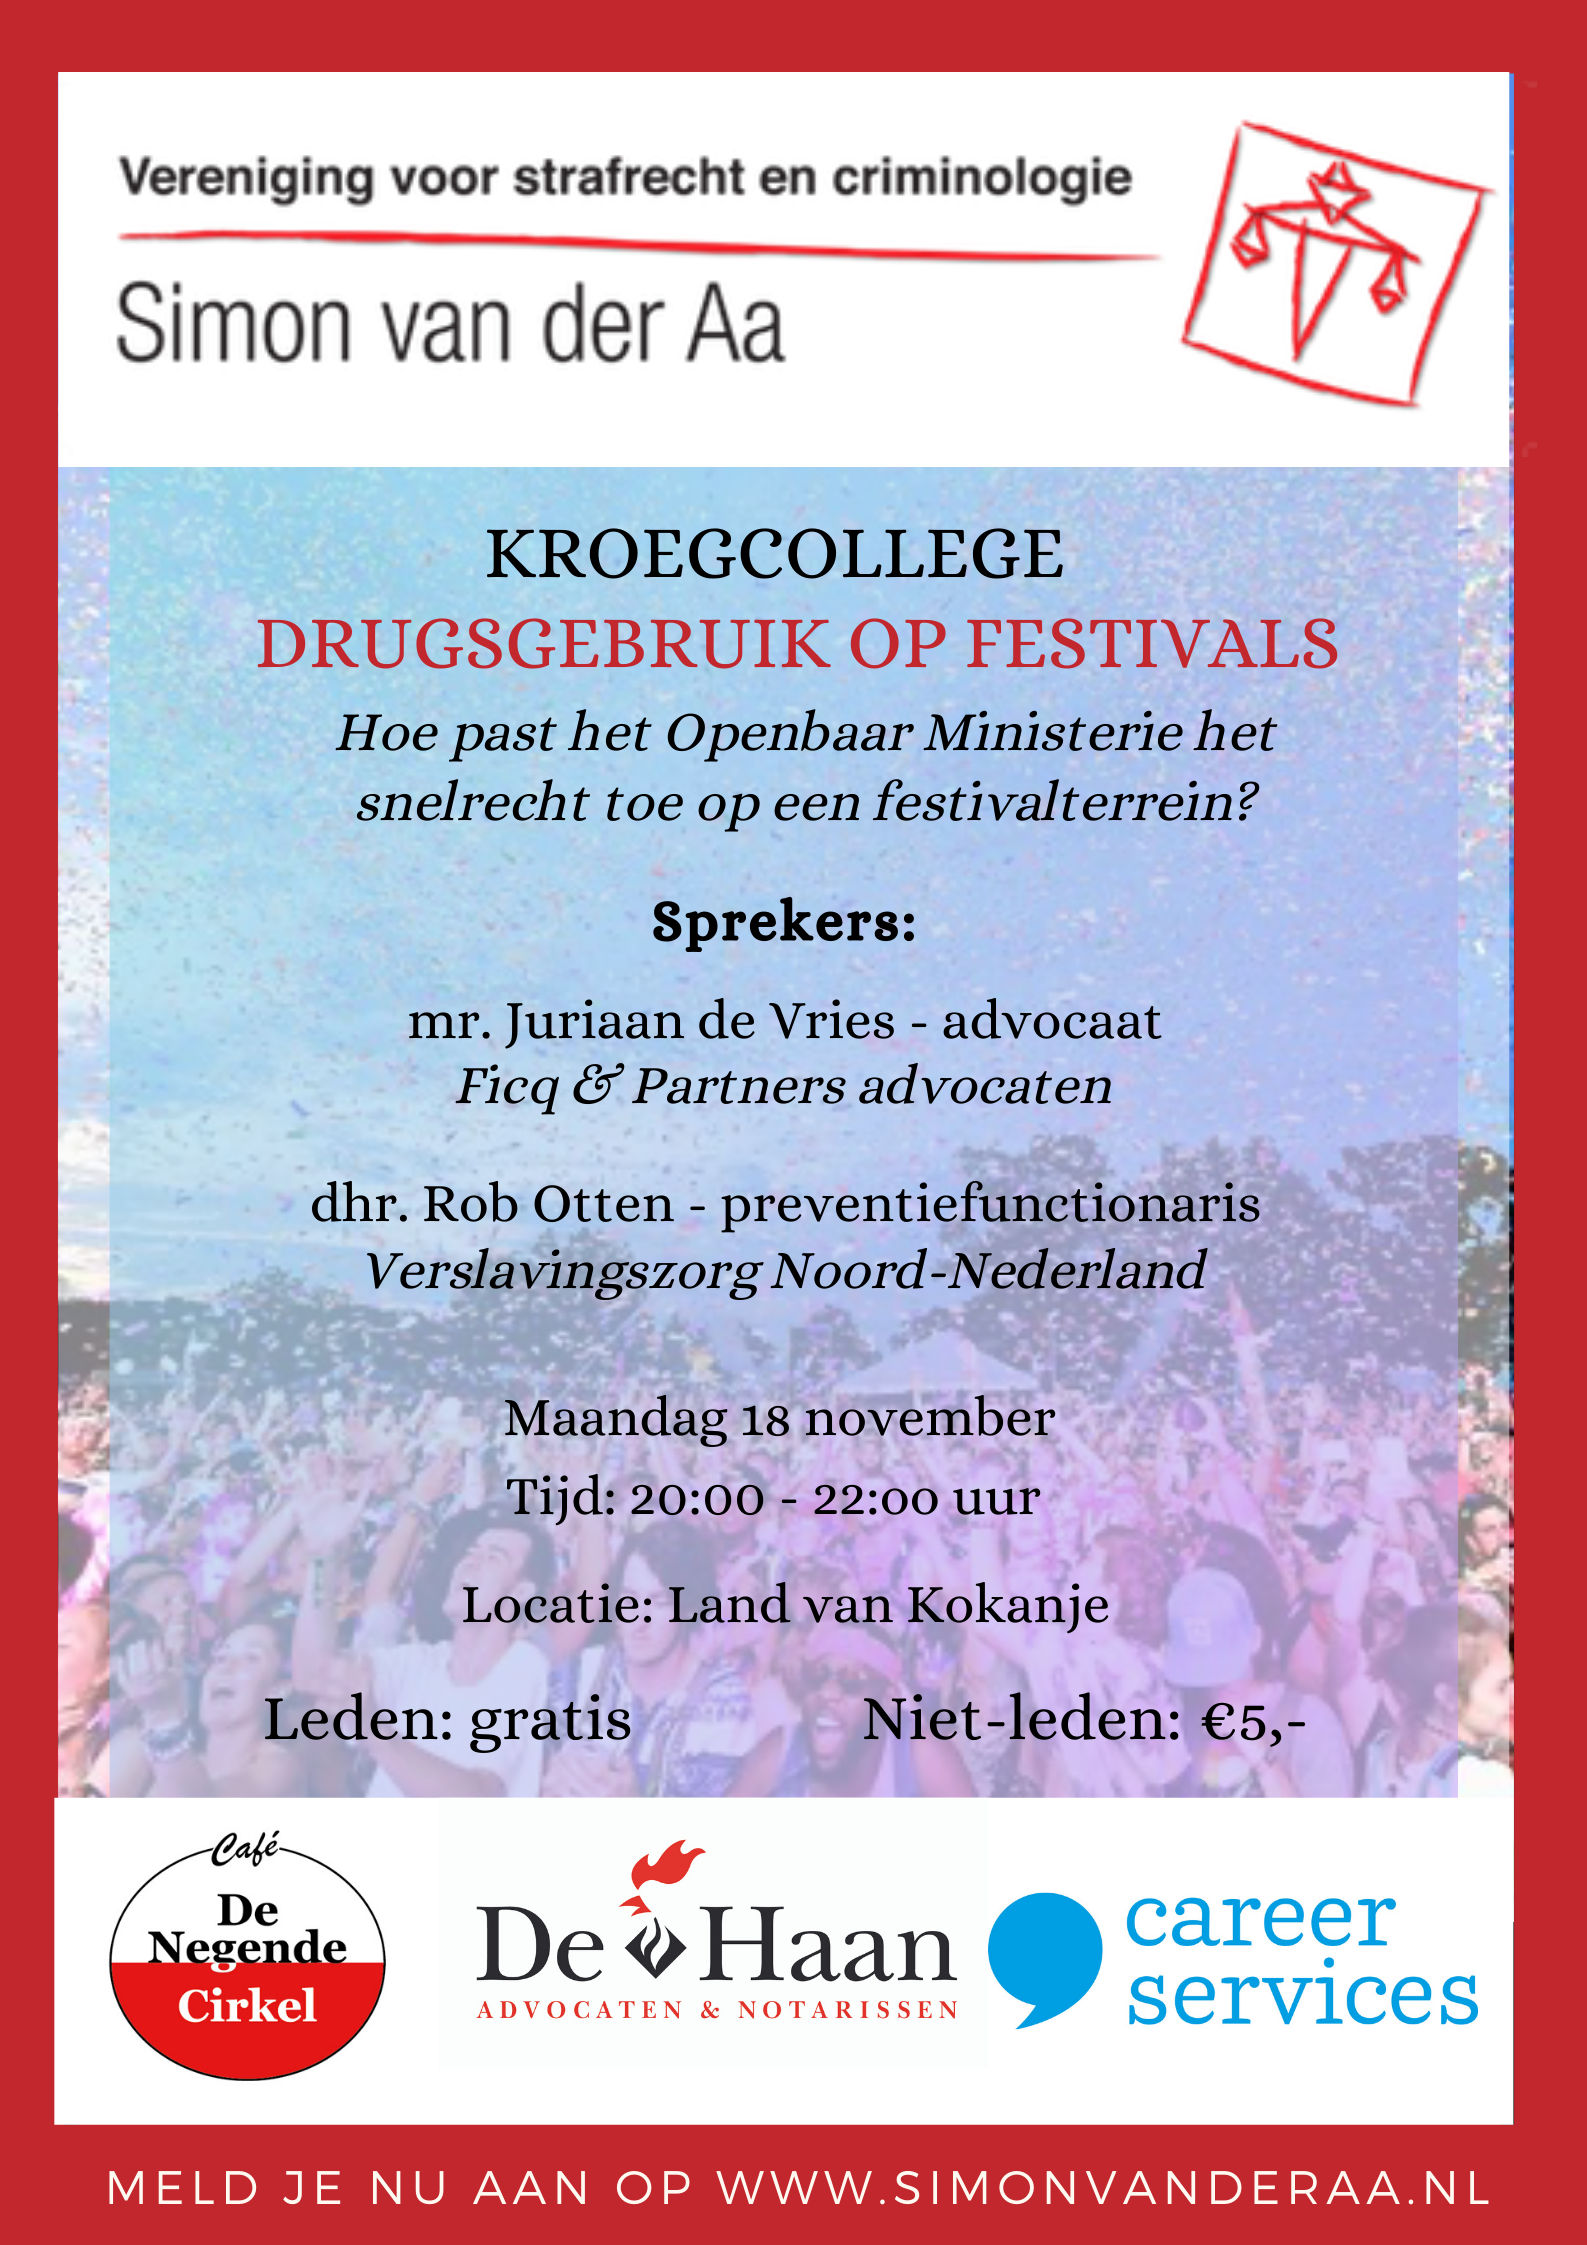 Kroegcollege Drugsgebruik op festivals. Hoe past het Openbaar Ministerie het snelrecht toe op een festivalterrein?